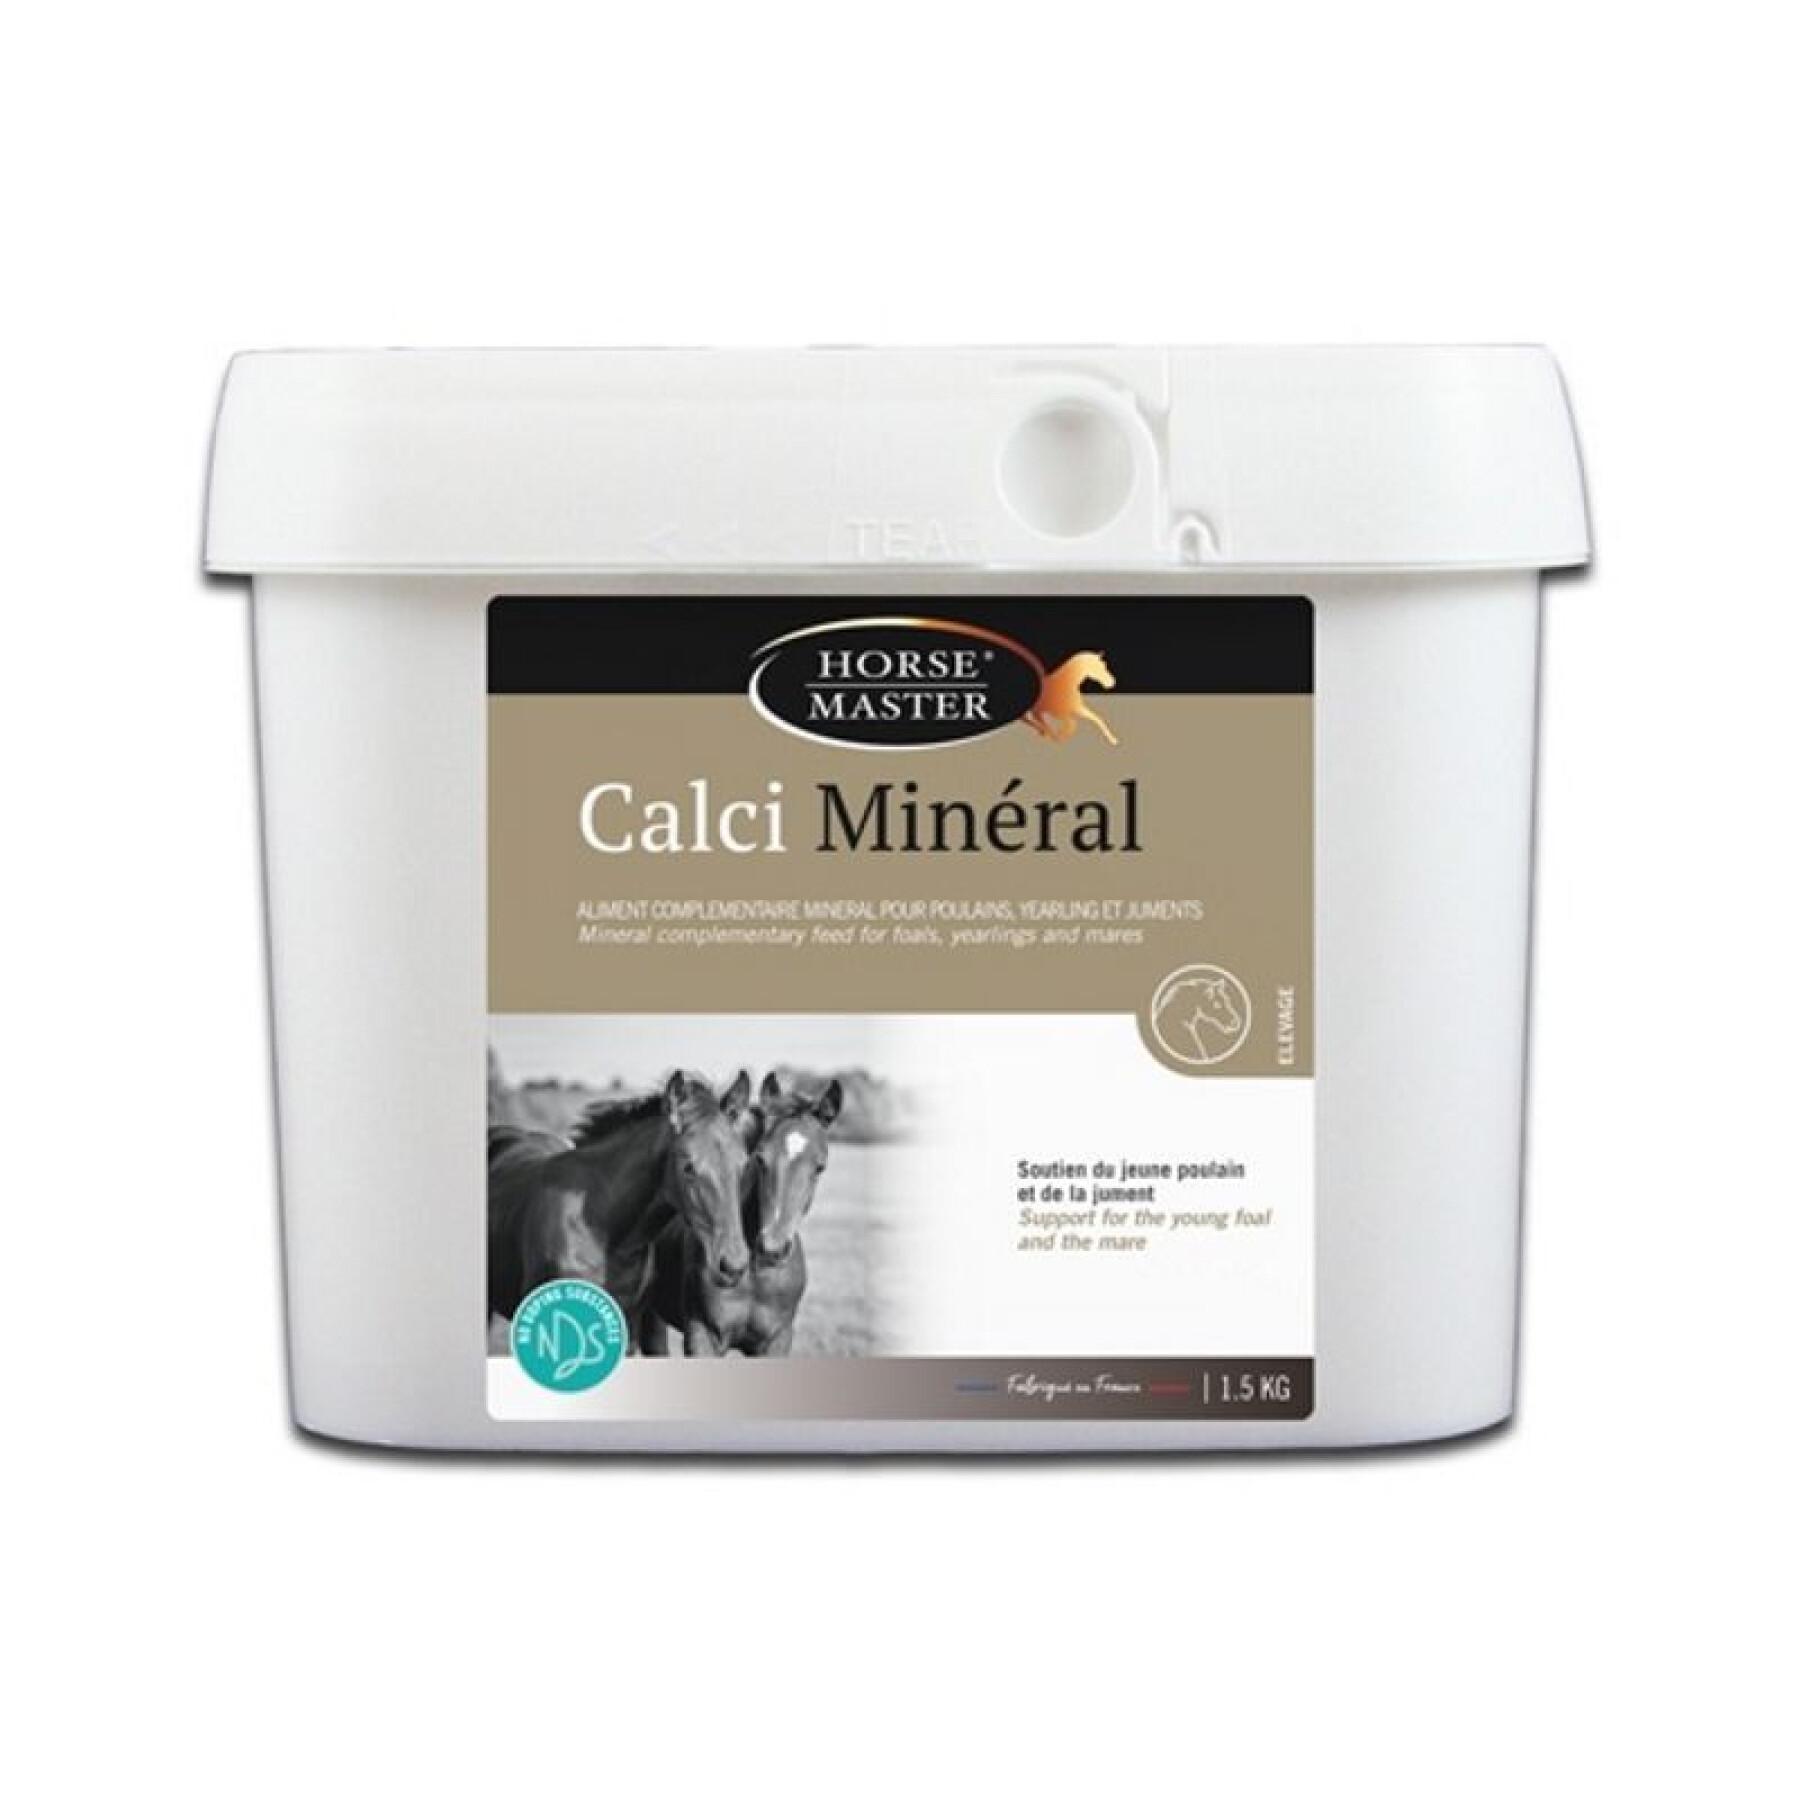 Vitaminas y minerales para caballos Horse Master Calci Minéral